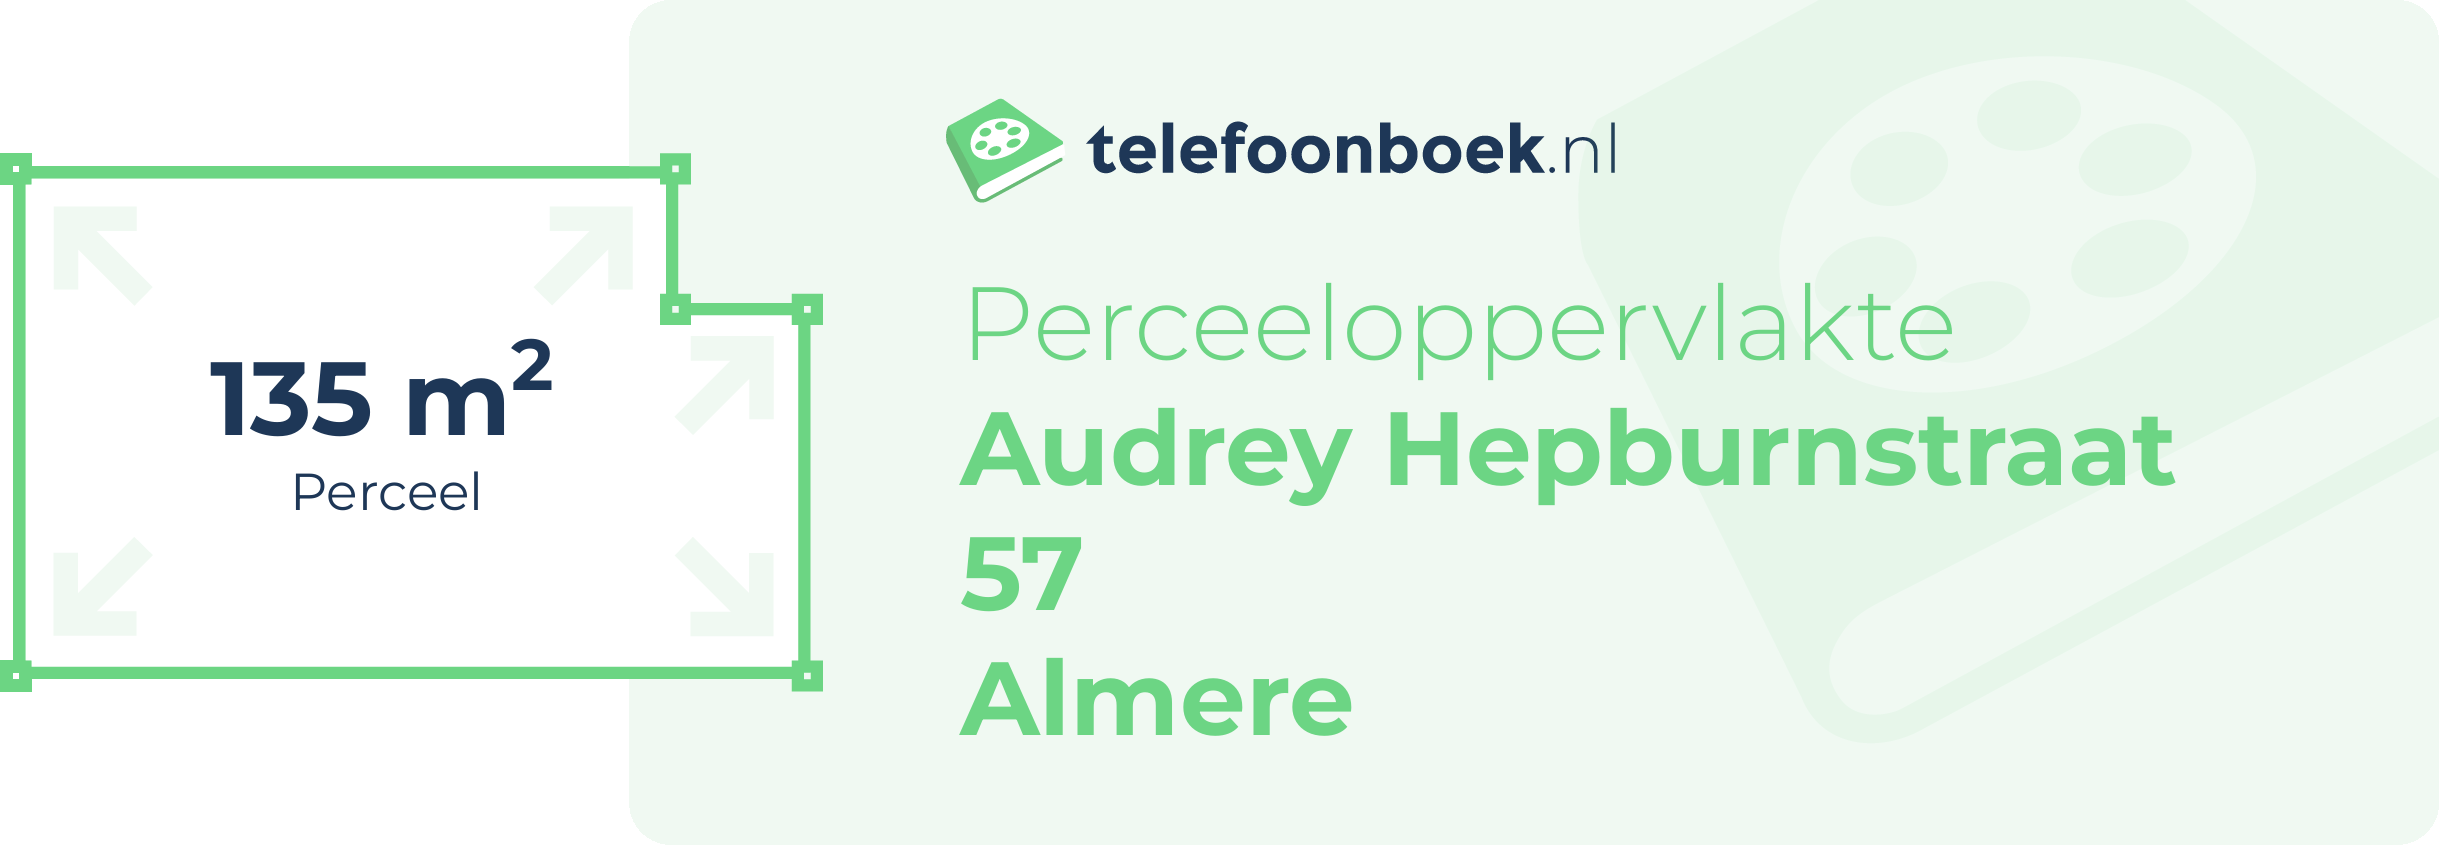 Perceeloppervlakte Audrey Hepburnstraat 57 Almere